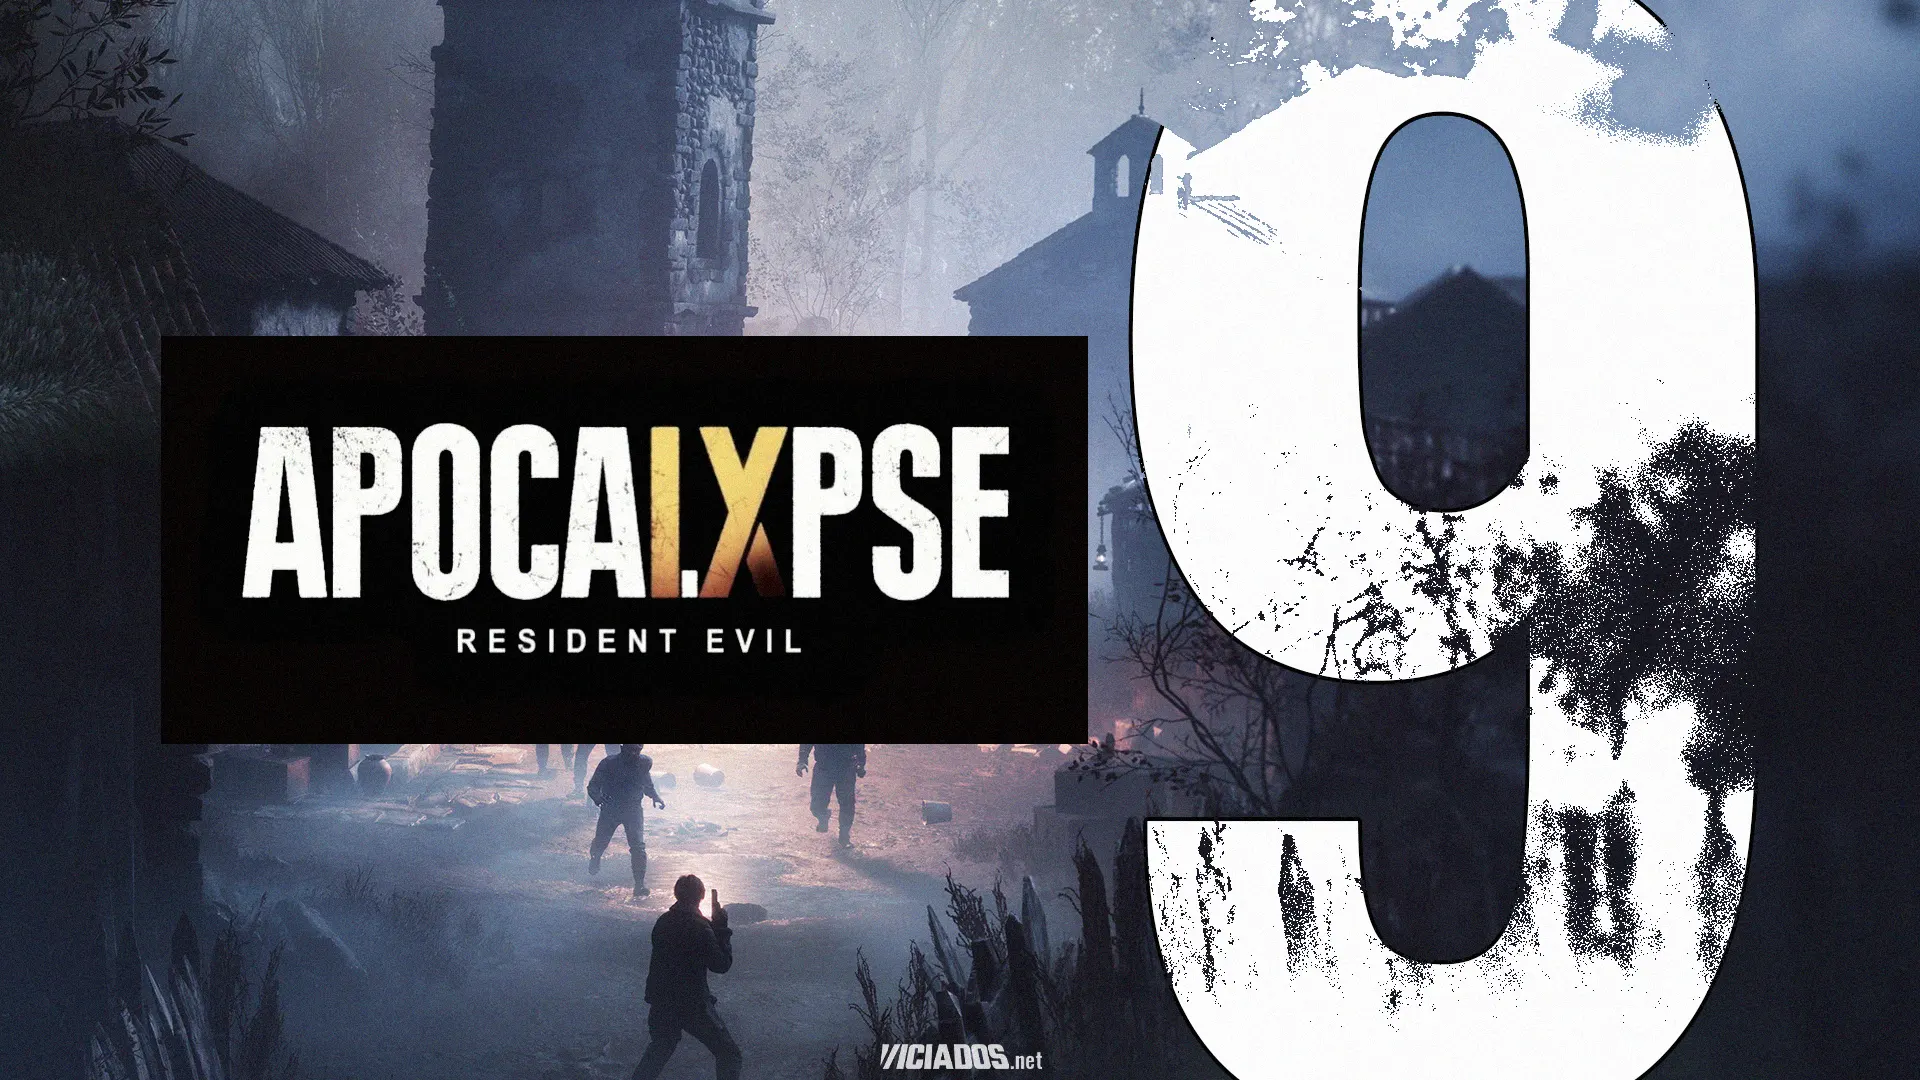 Resident Evil | Insider revela que Capcom aprovou diversos projetos para a franquia 2024 Portal Viciados